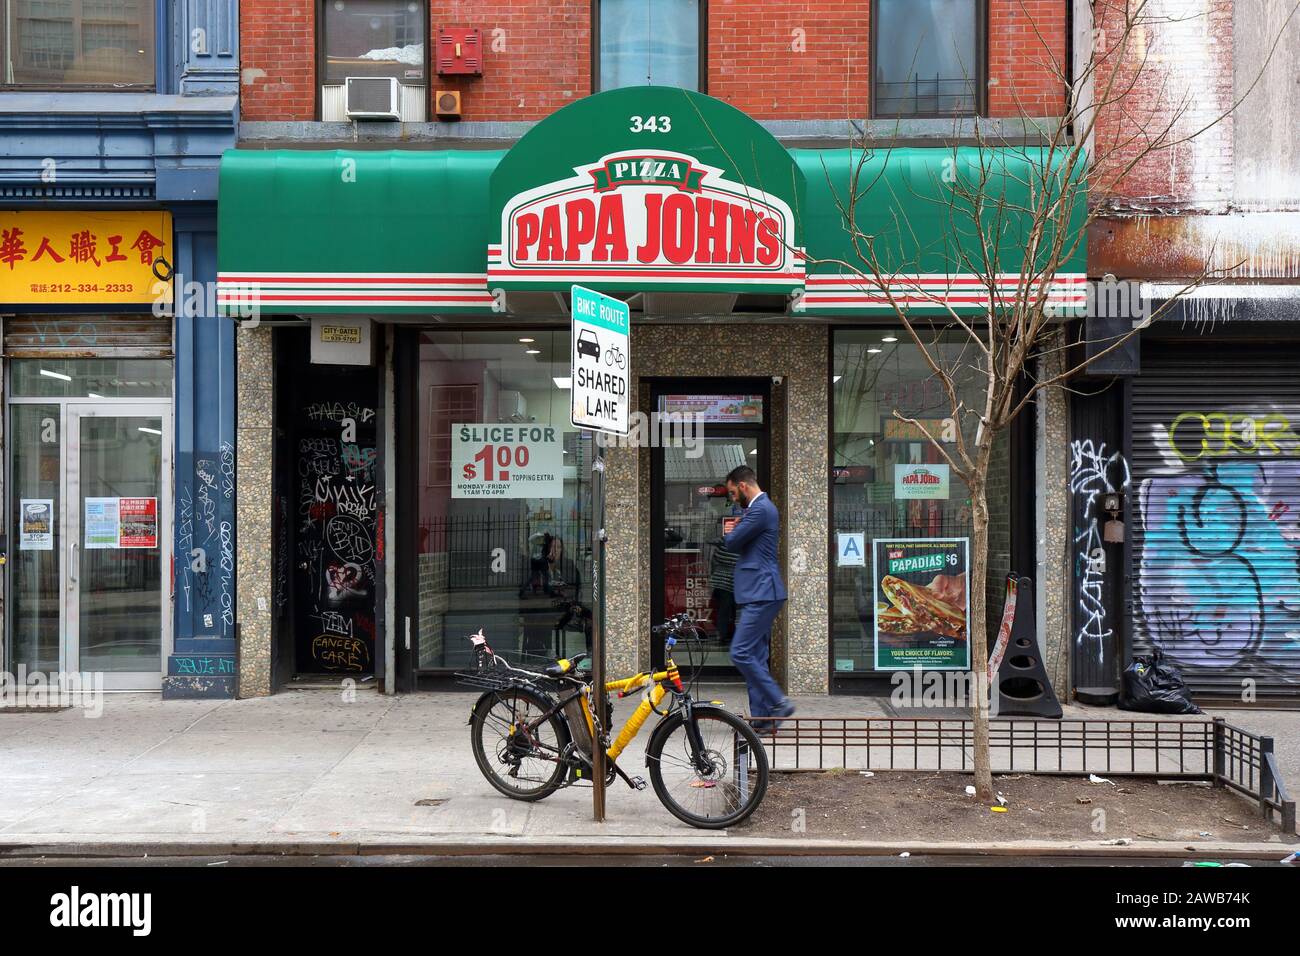 Papa John's Pizza, 343 Grand Street, New York, foto del negozio di New York di una catena di negozi di pizza nel Lower East Side di Manhattan Foto Stock